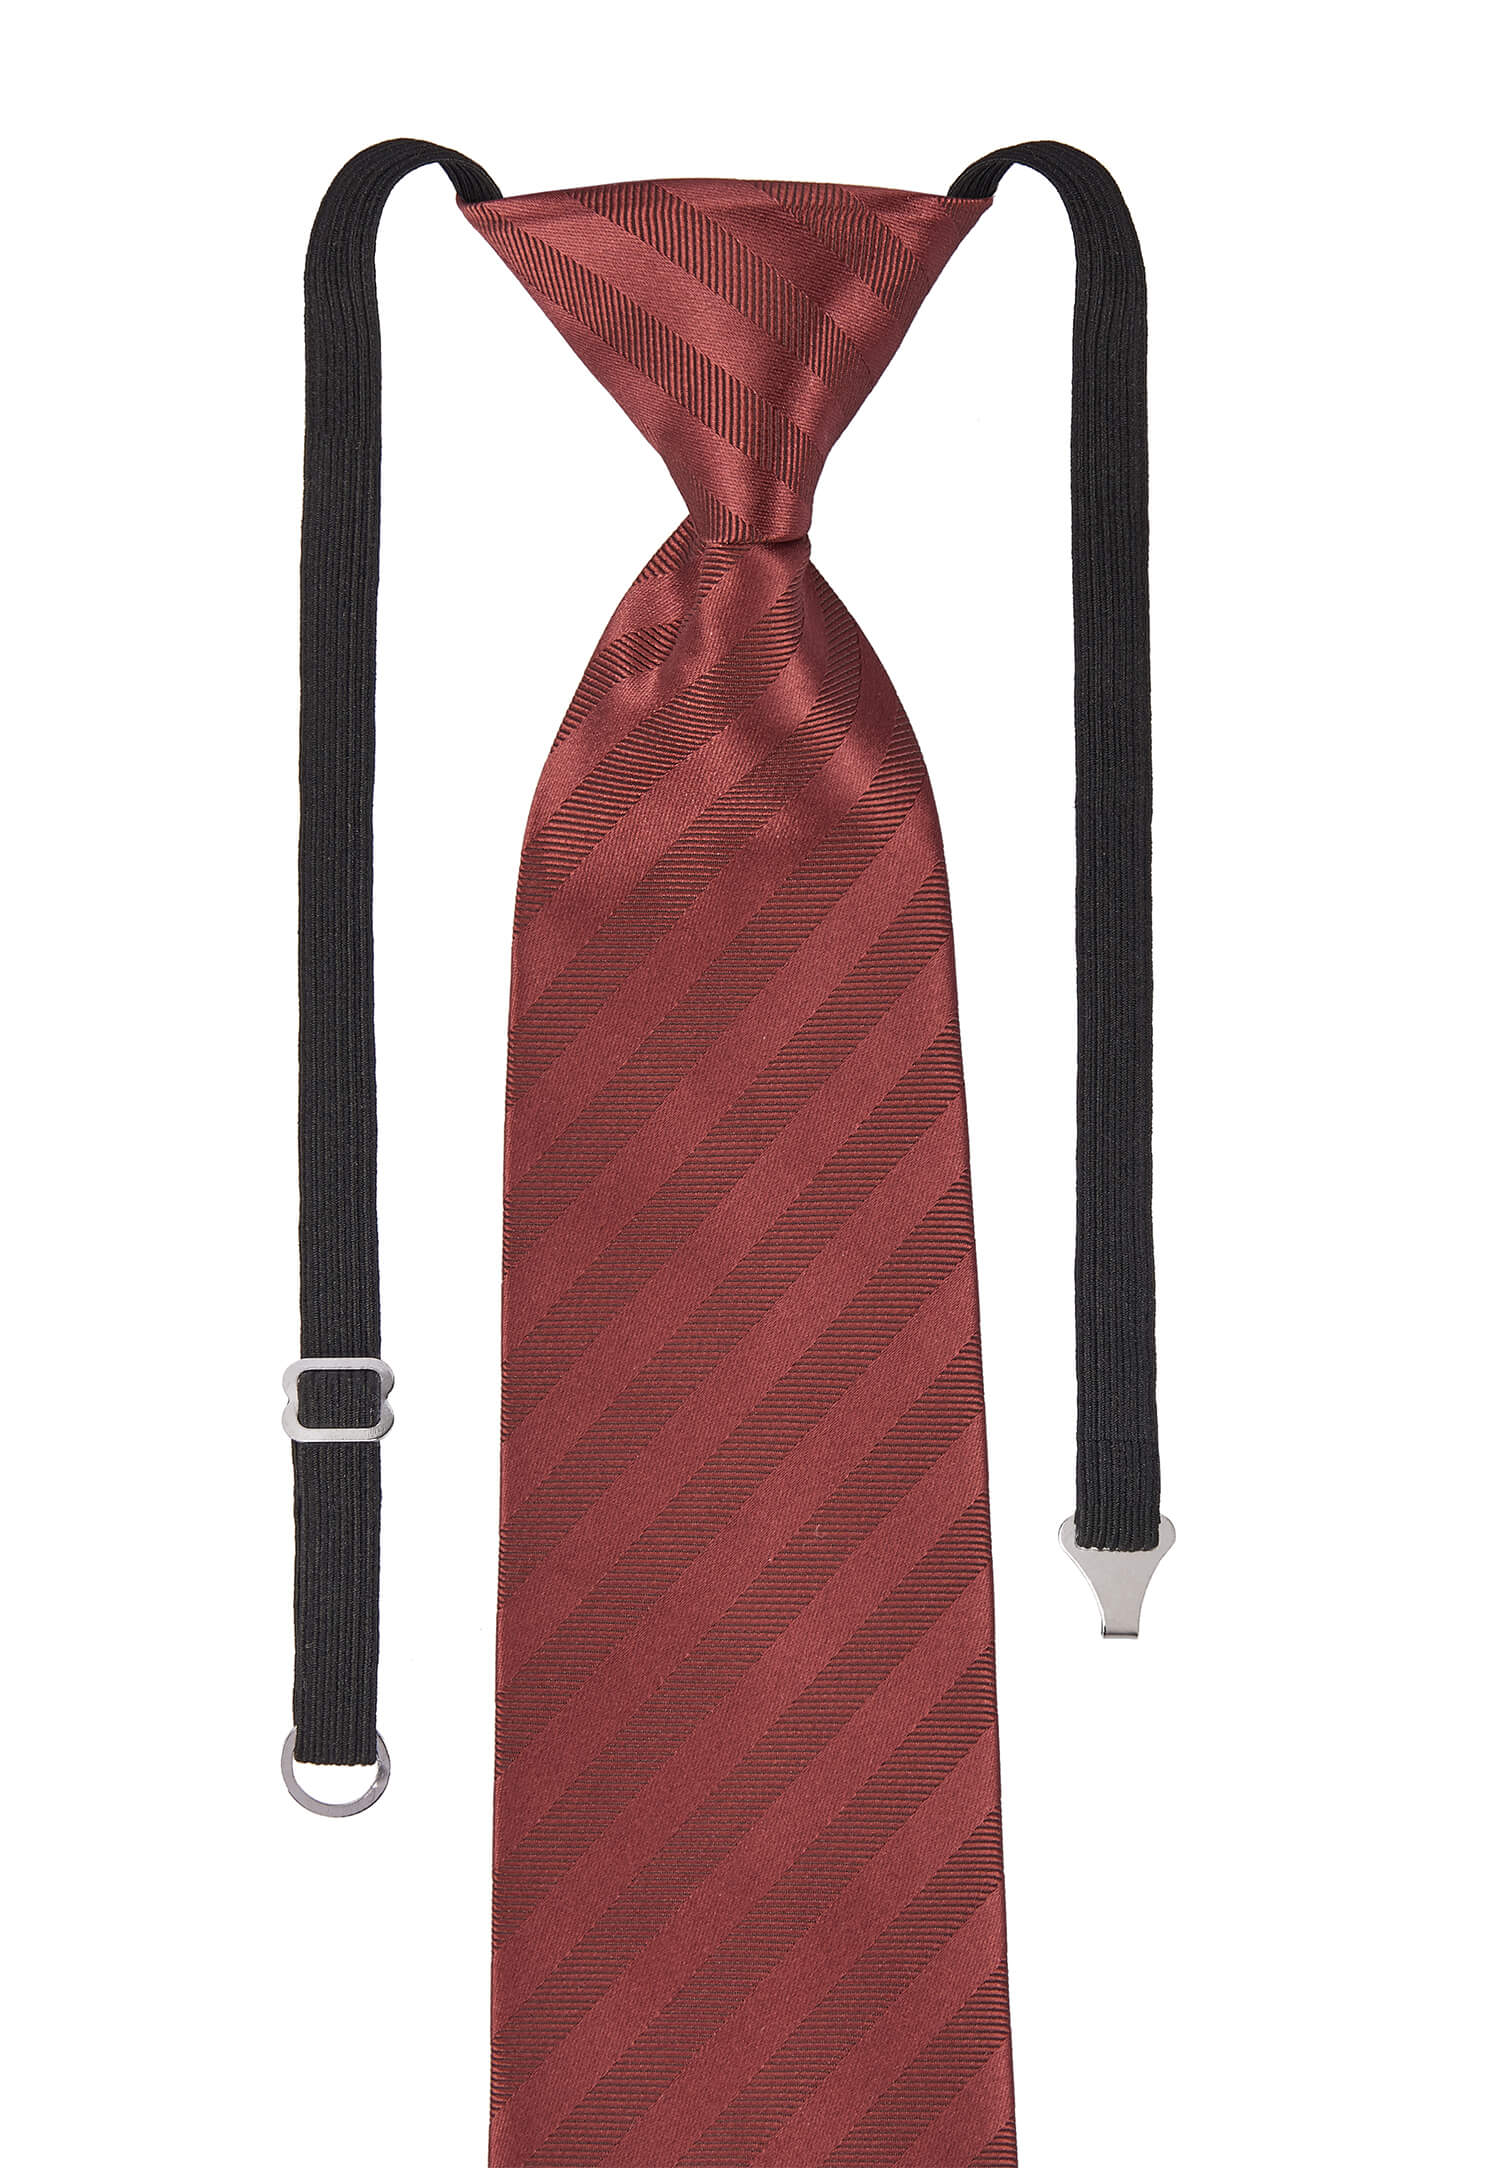 Krawatte vorgebunden mit Gummizug - rot/bordeaux gestreift